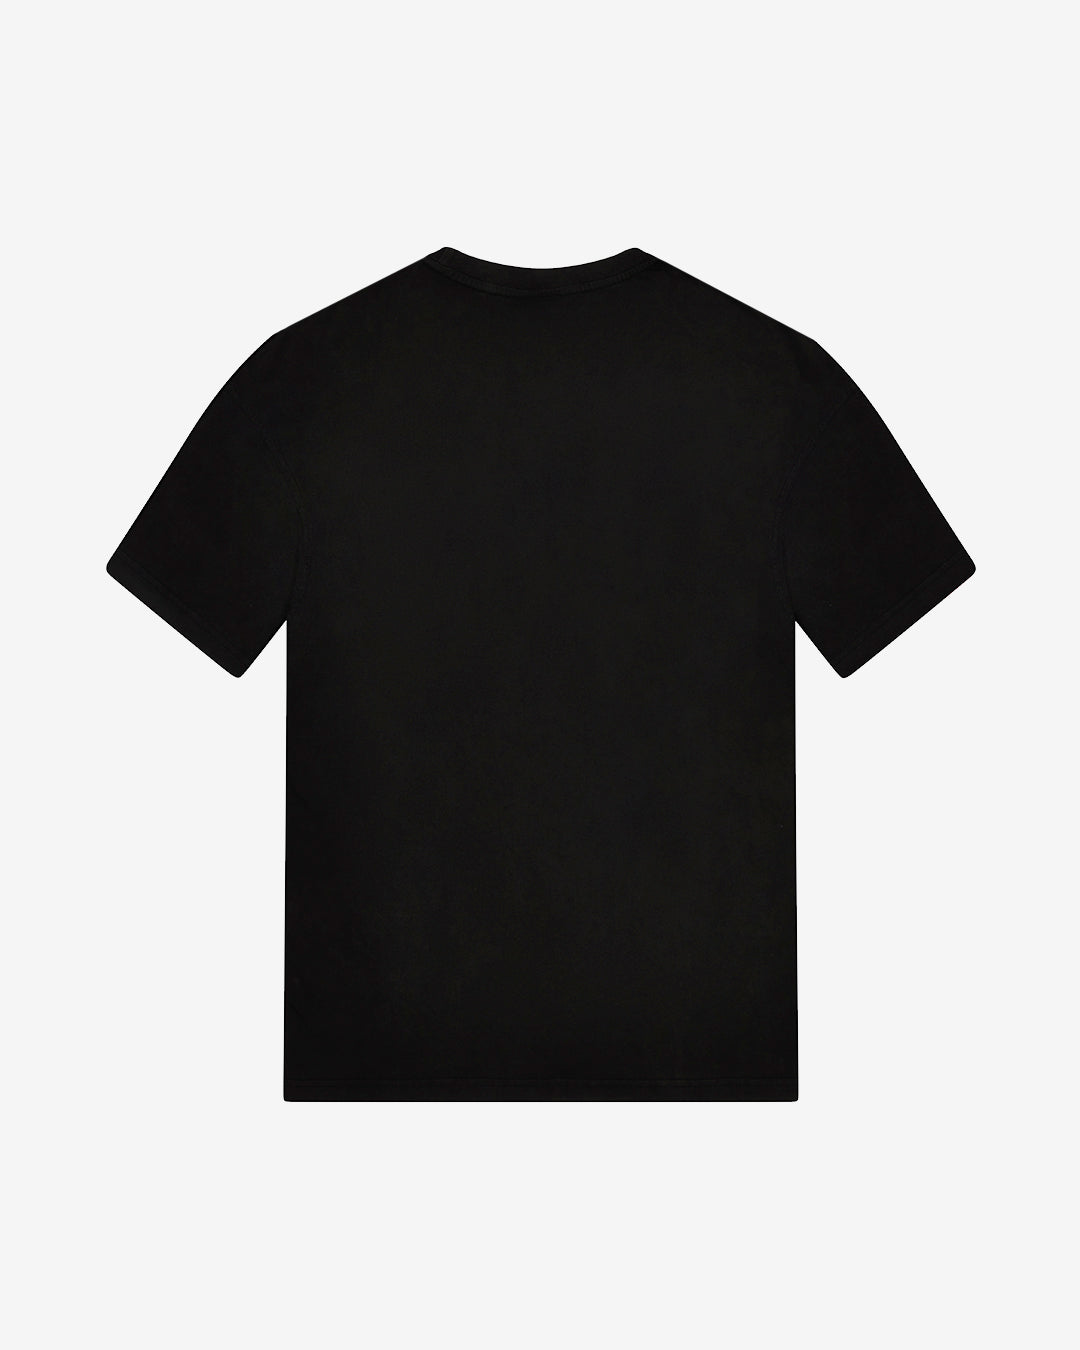 OC: 00-12 - Women's Hartpury T-Shirt - Black